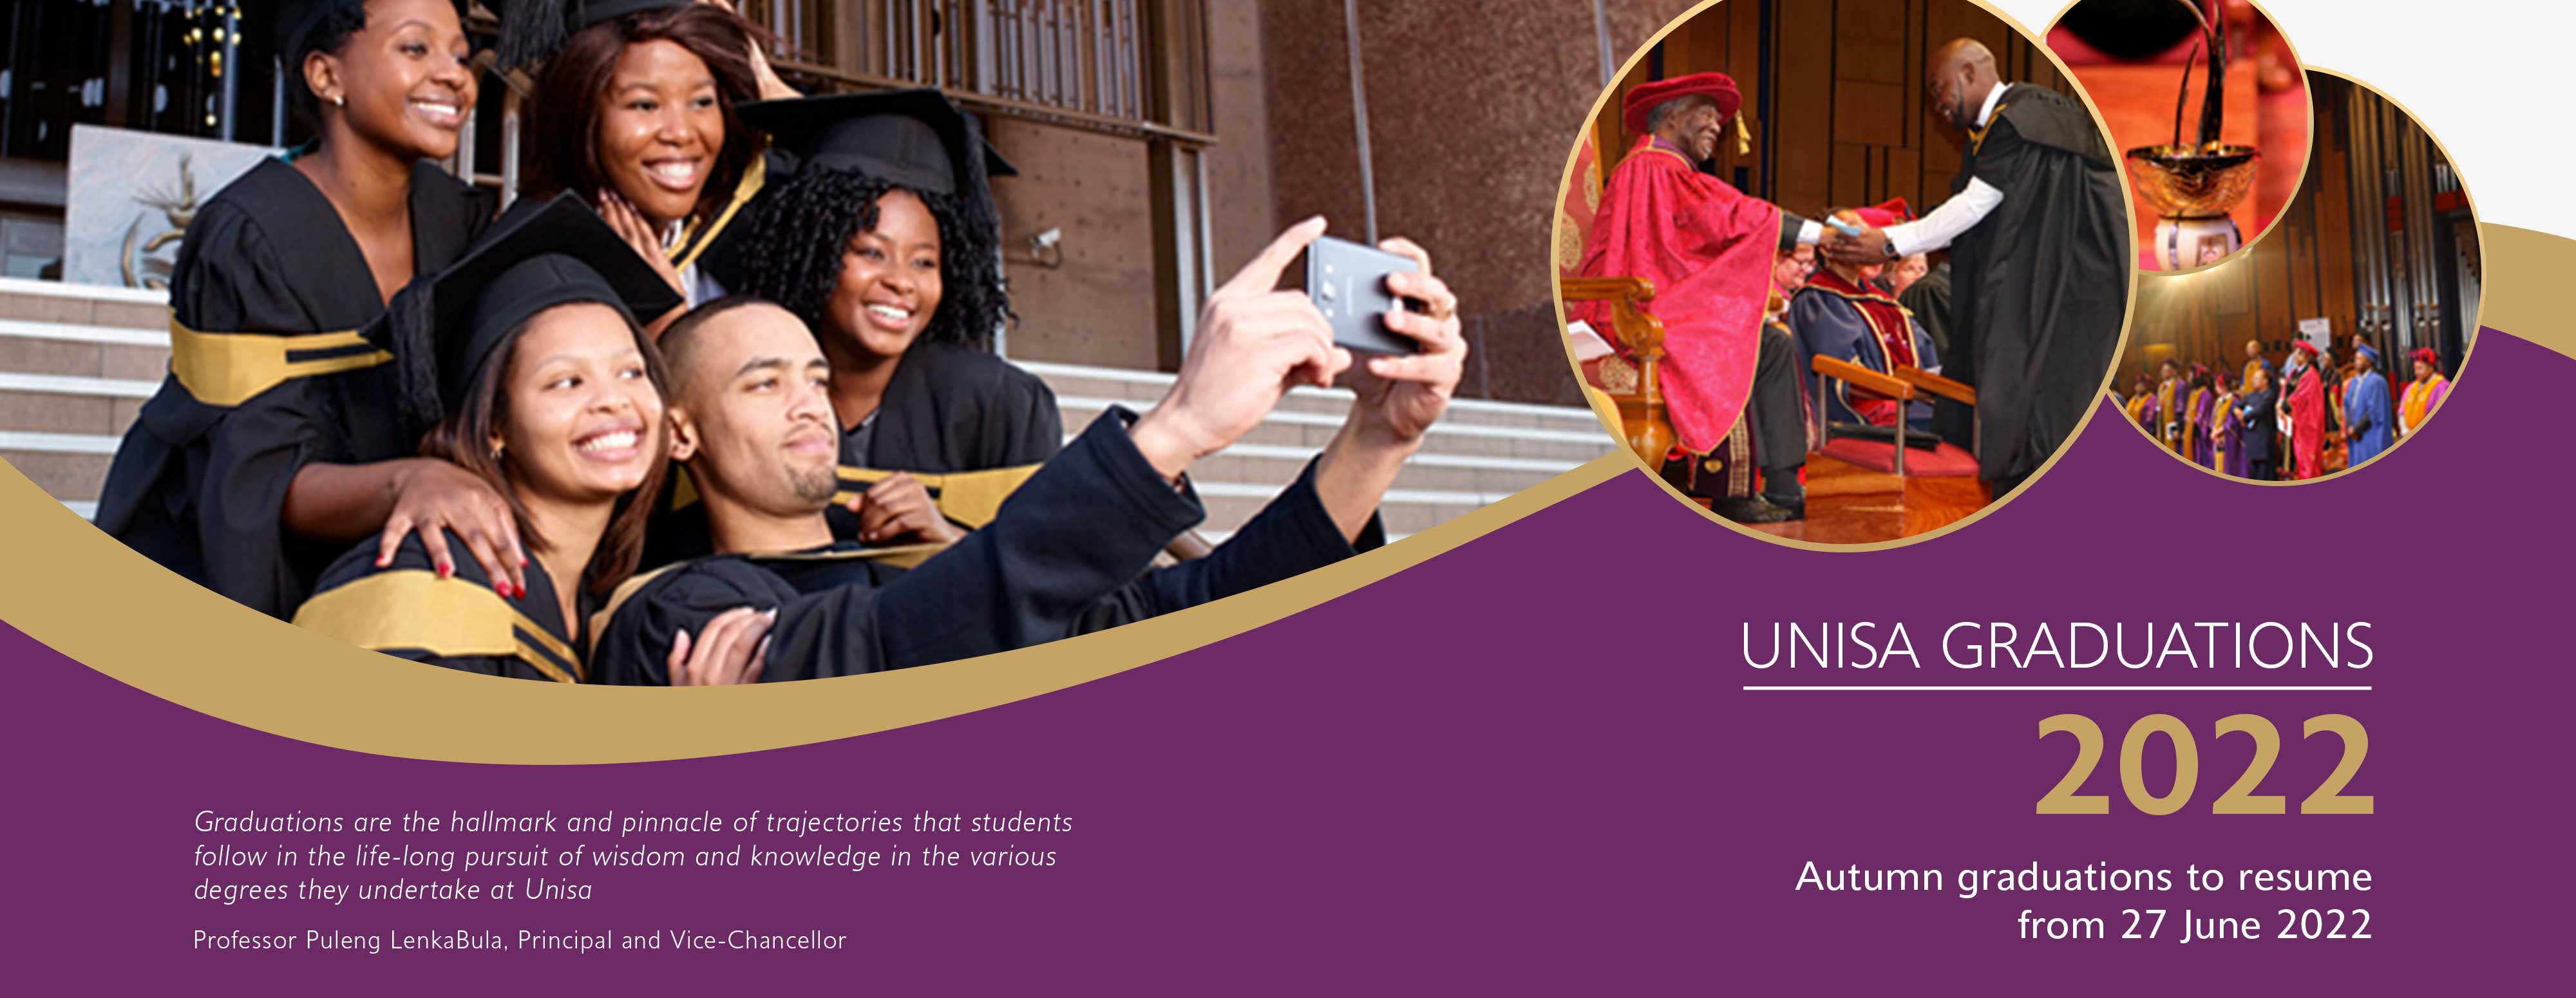 Update: Revised dates for Unisa graduation ceremonies